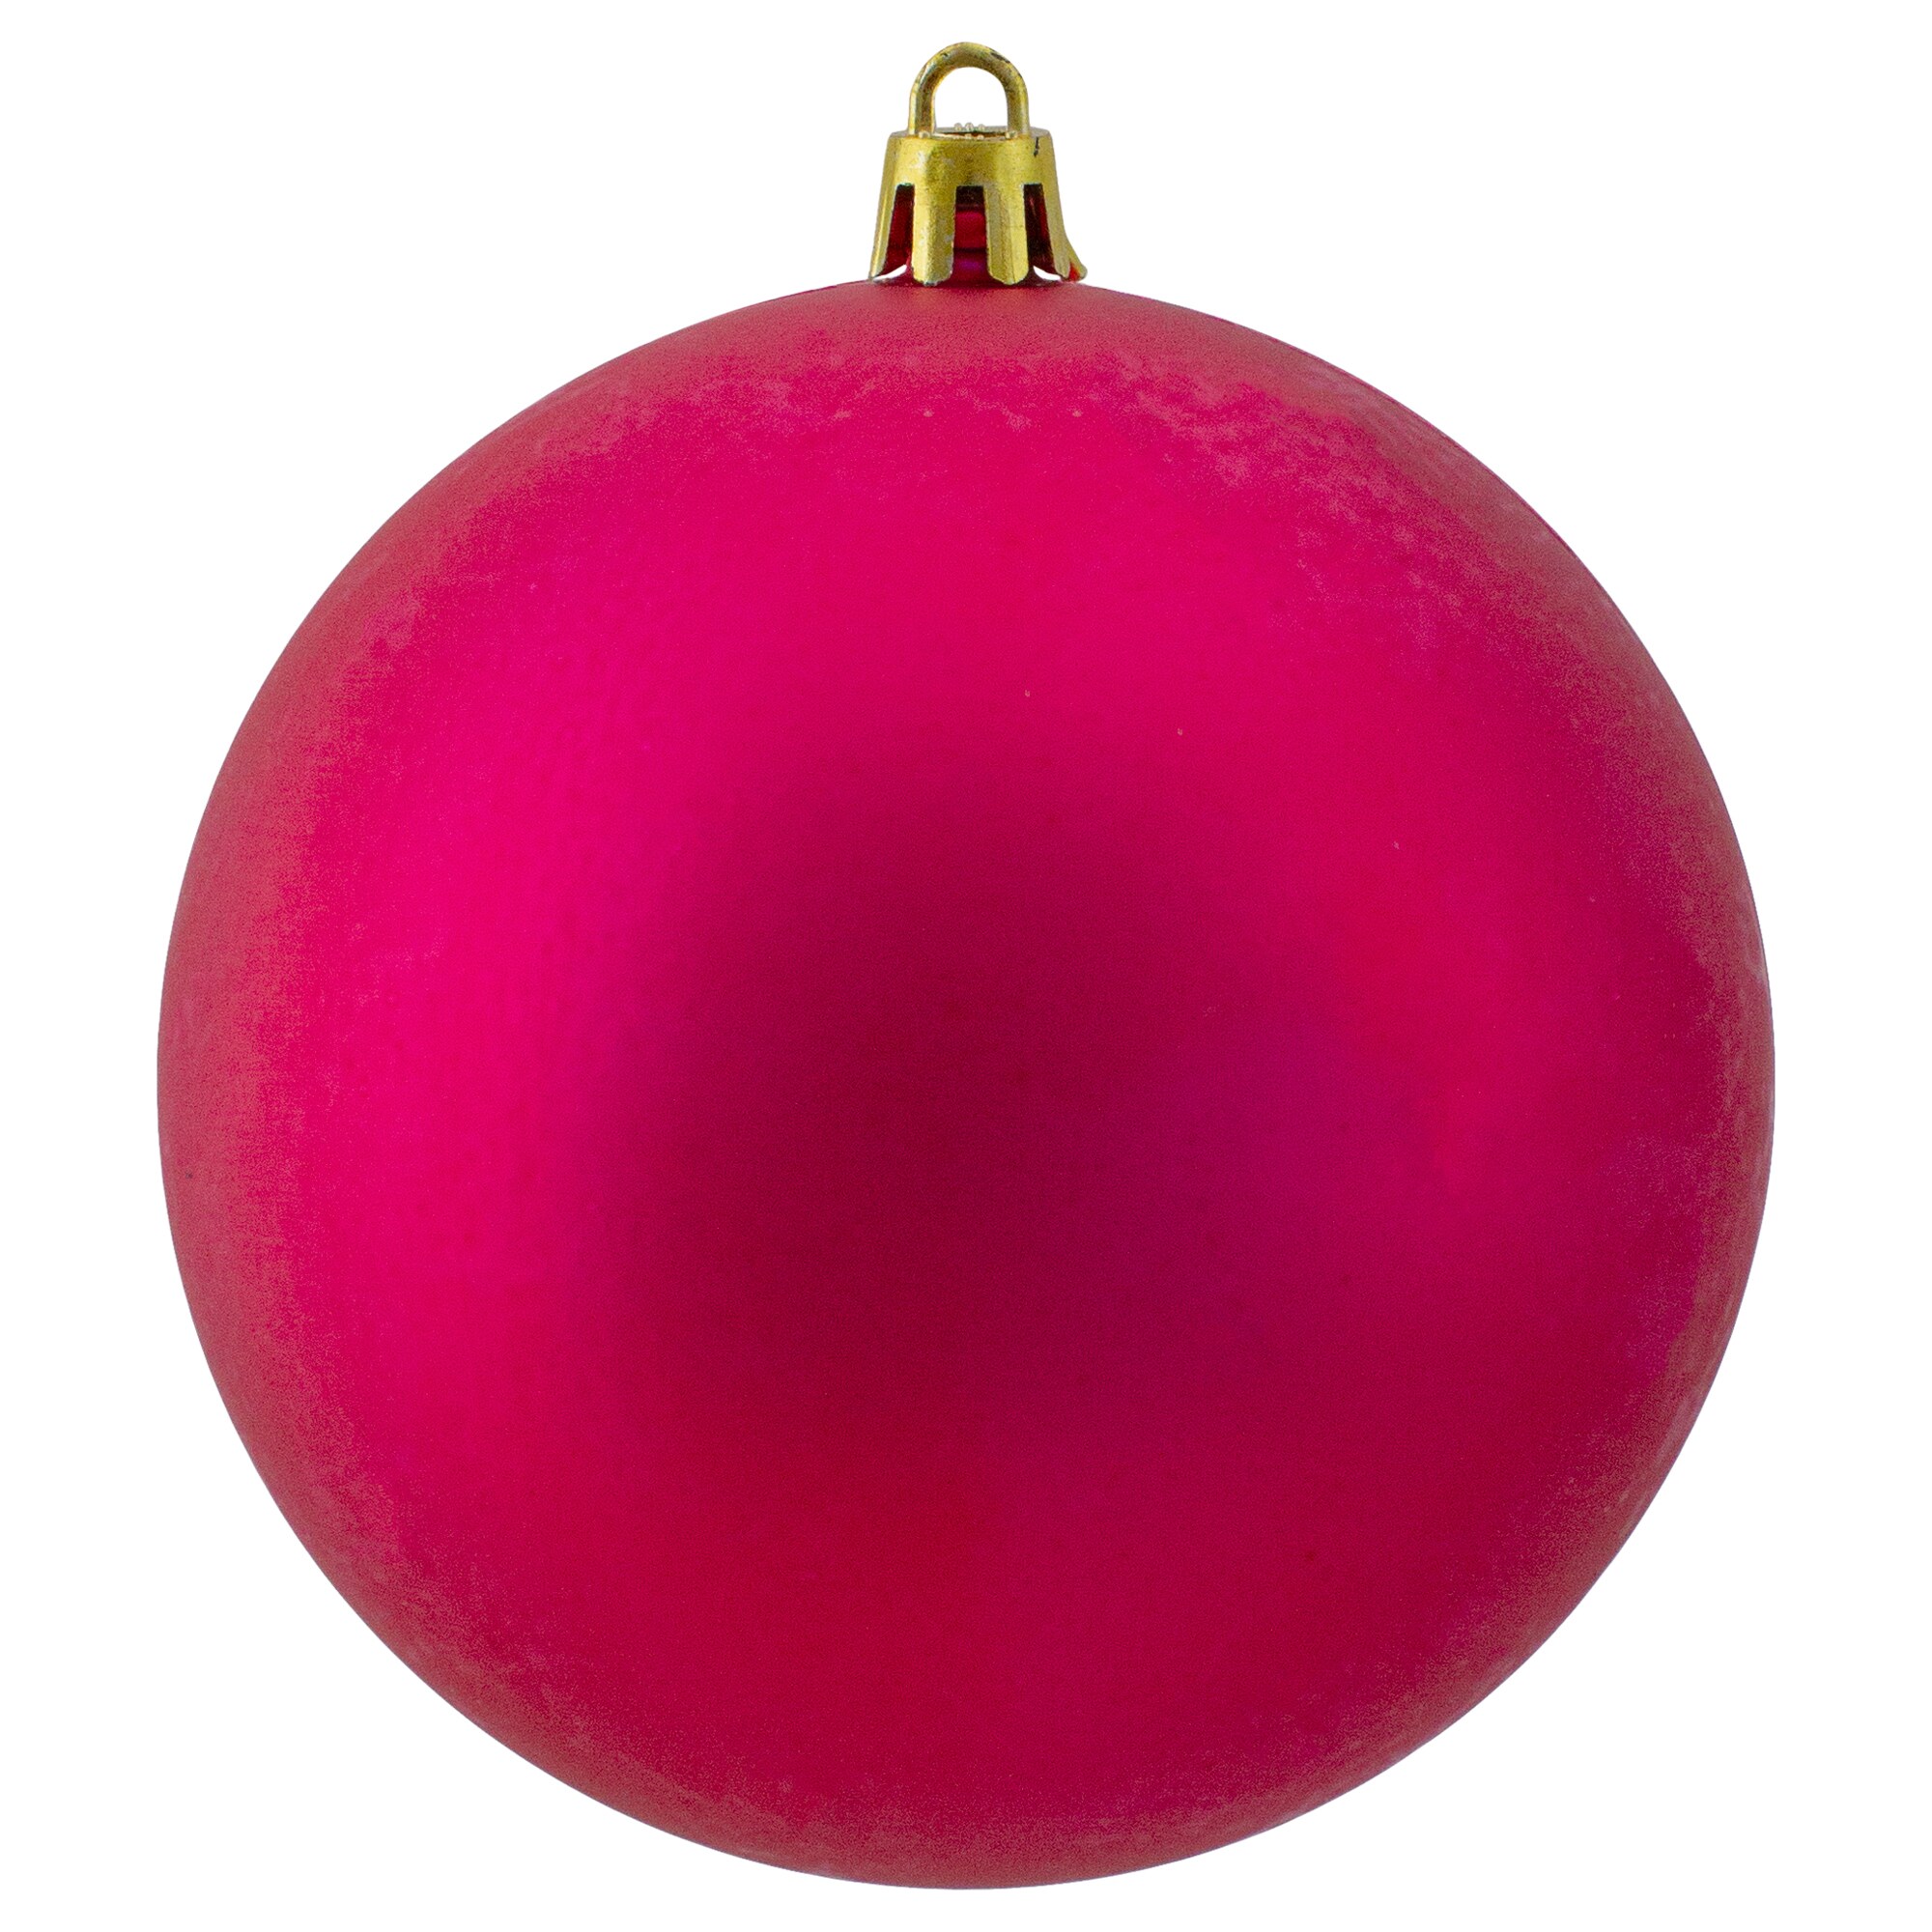 Pink Christmas Ornaments at